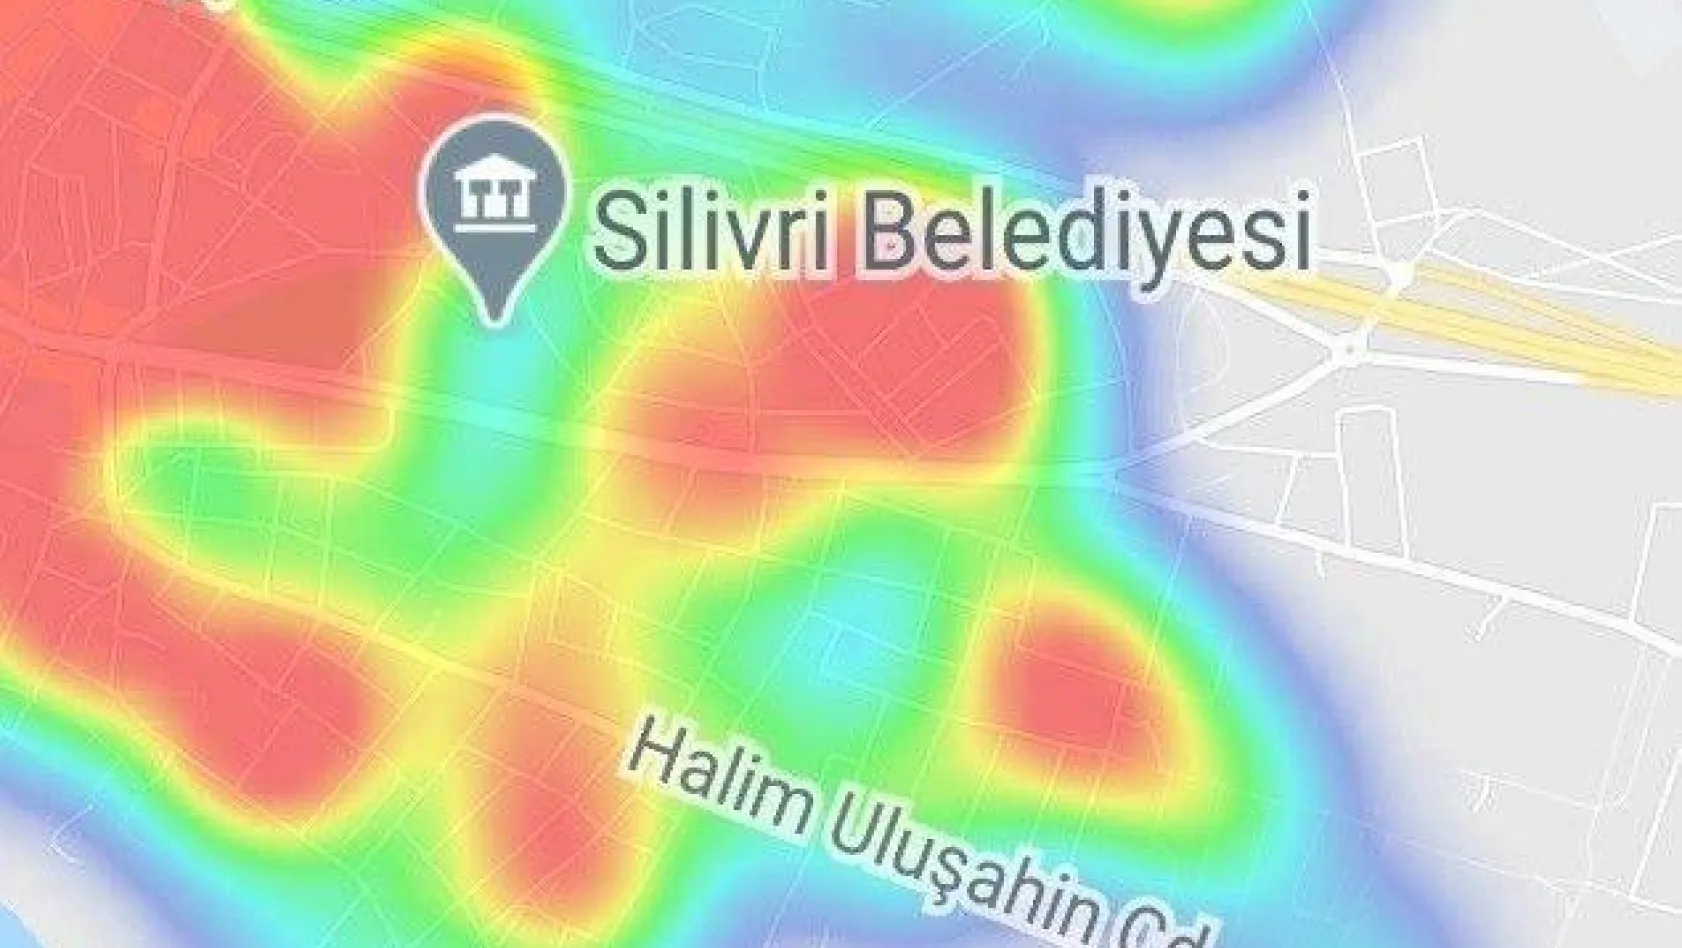 Vaka sayısı artıyor! İşte Silivri'nin Covid-19 haritası (31 Mart 2021)